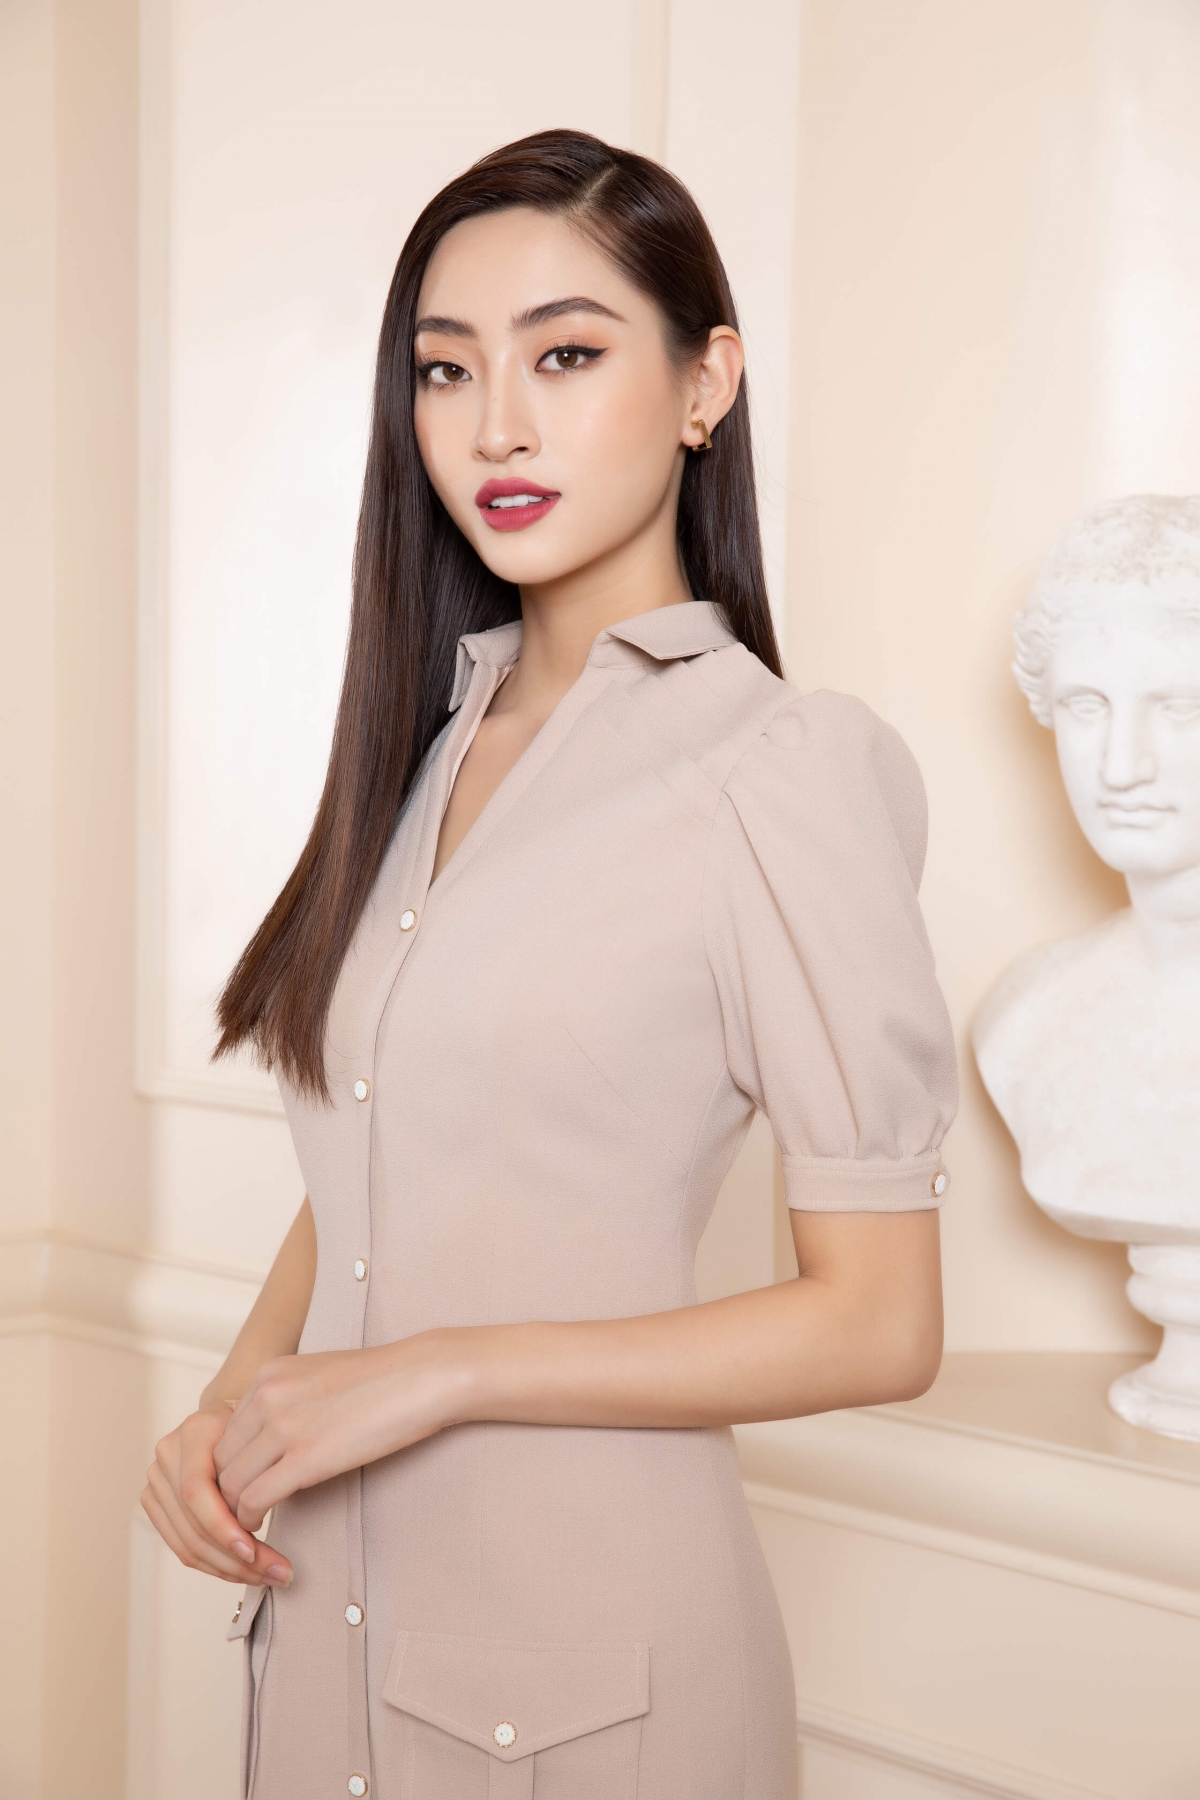 Hoa hậu Lương Thuỳ Linh chuyển hướng kinh doanh - Ảnh 9.